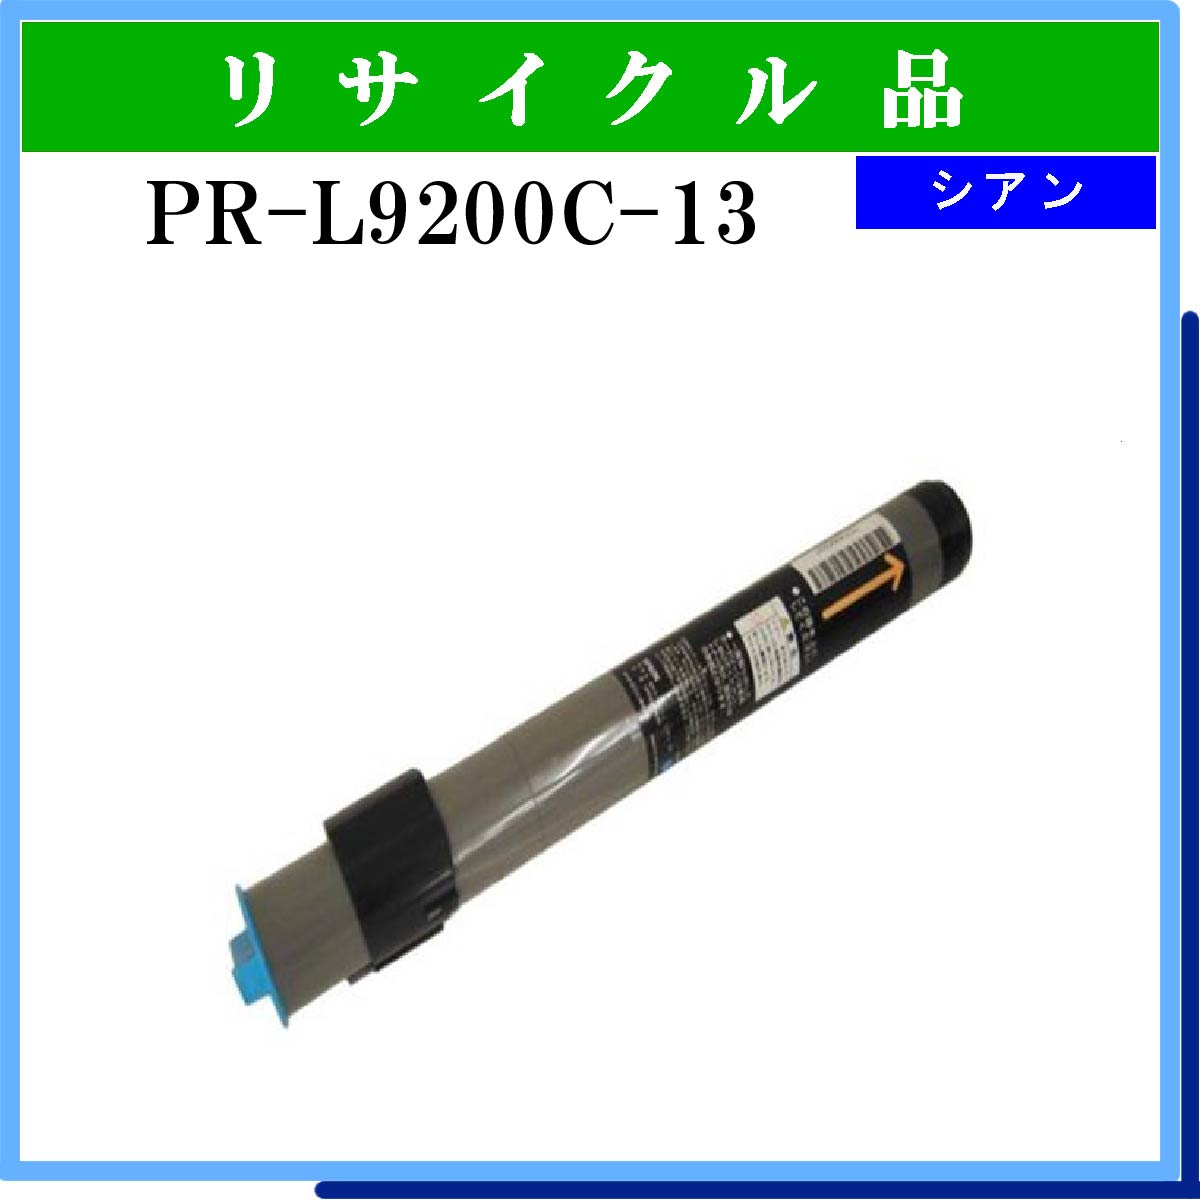 PR-L9200C-13